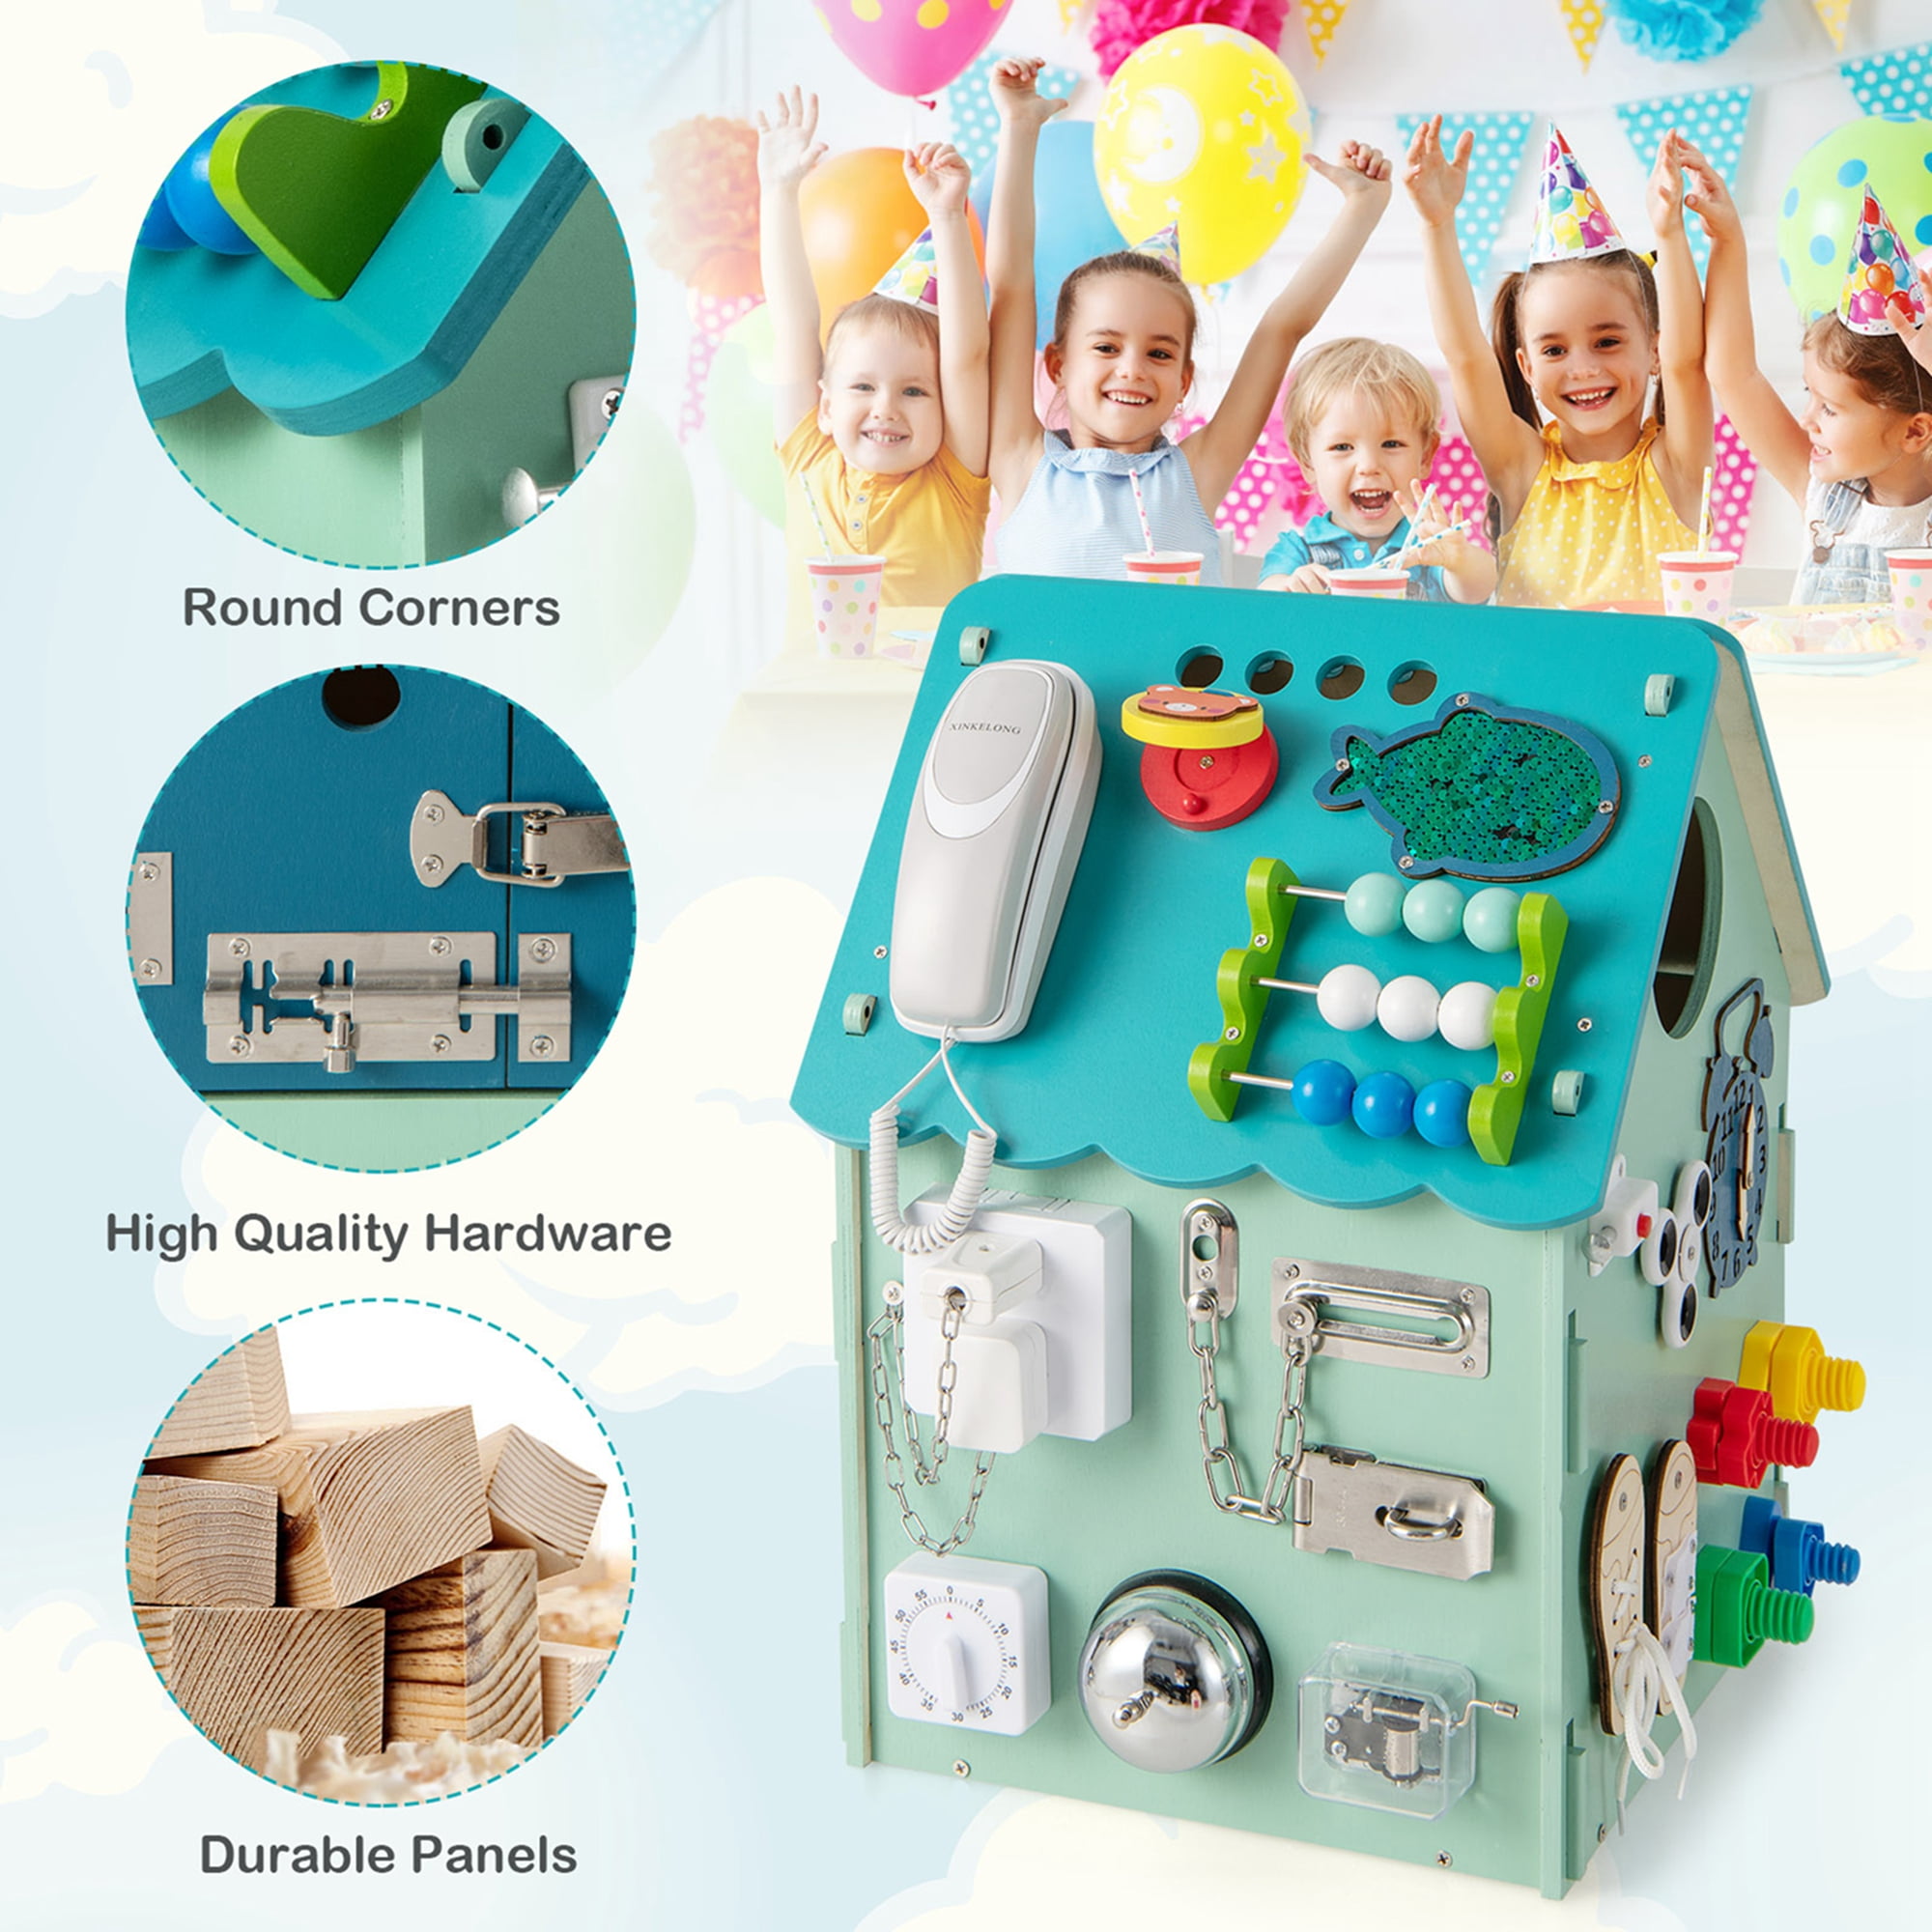 Casa giocattolo in legno degli ingranaggi, Montessori con giochi sensoriali  e spazio interno per bambini - Costway